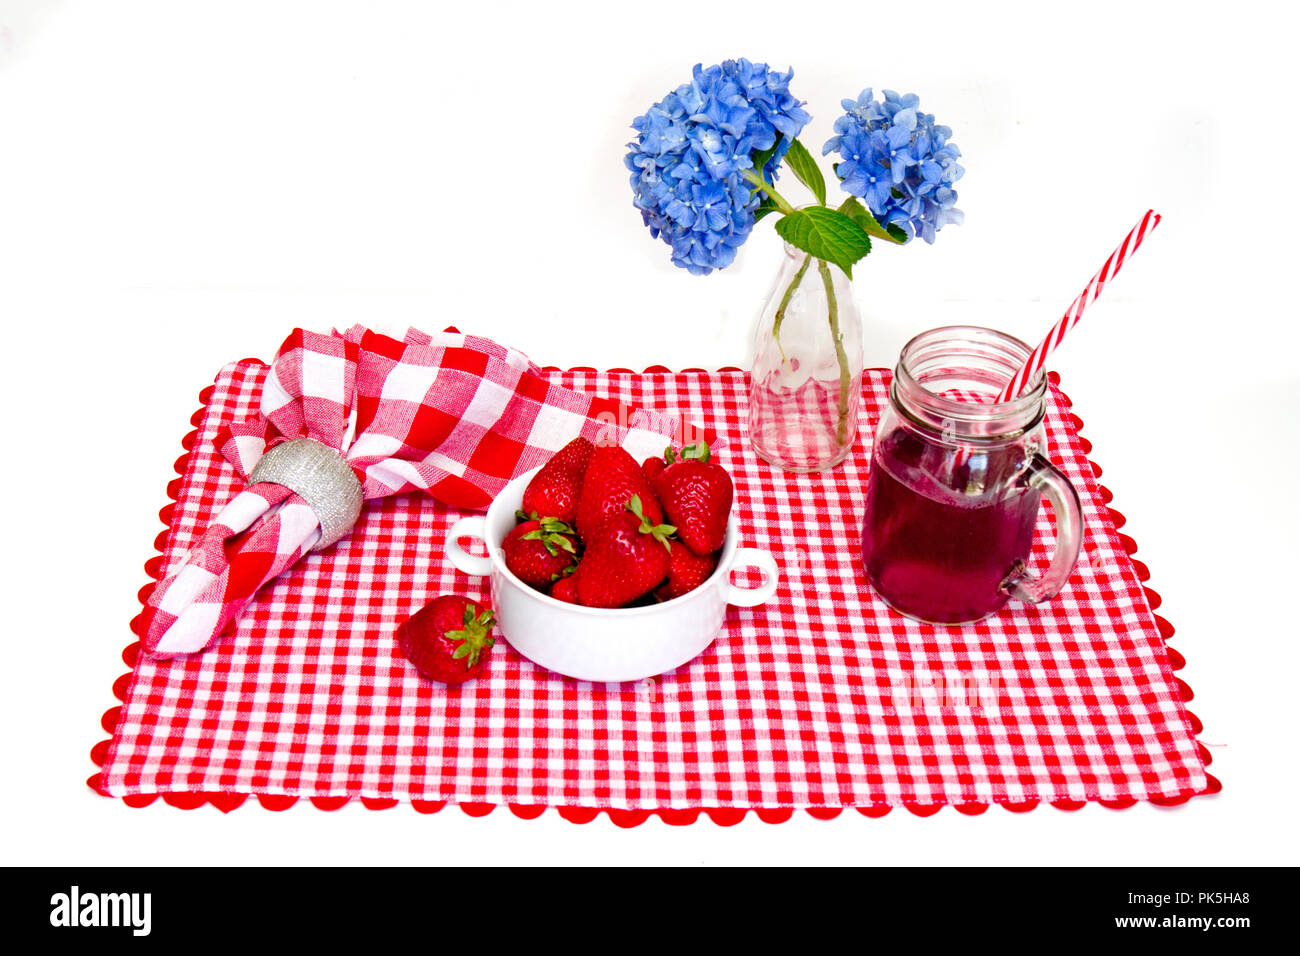 Patriotische, Rot, Weiß und Blau, Tisch mit Tischset, Schüssel mit Erdbeeren, Getränke im Glas mug und blaue Blumen in der Vase. Stockfoto